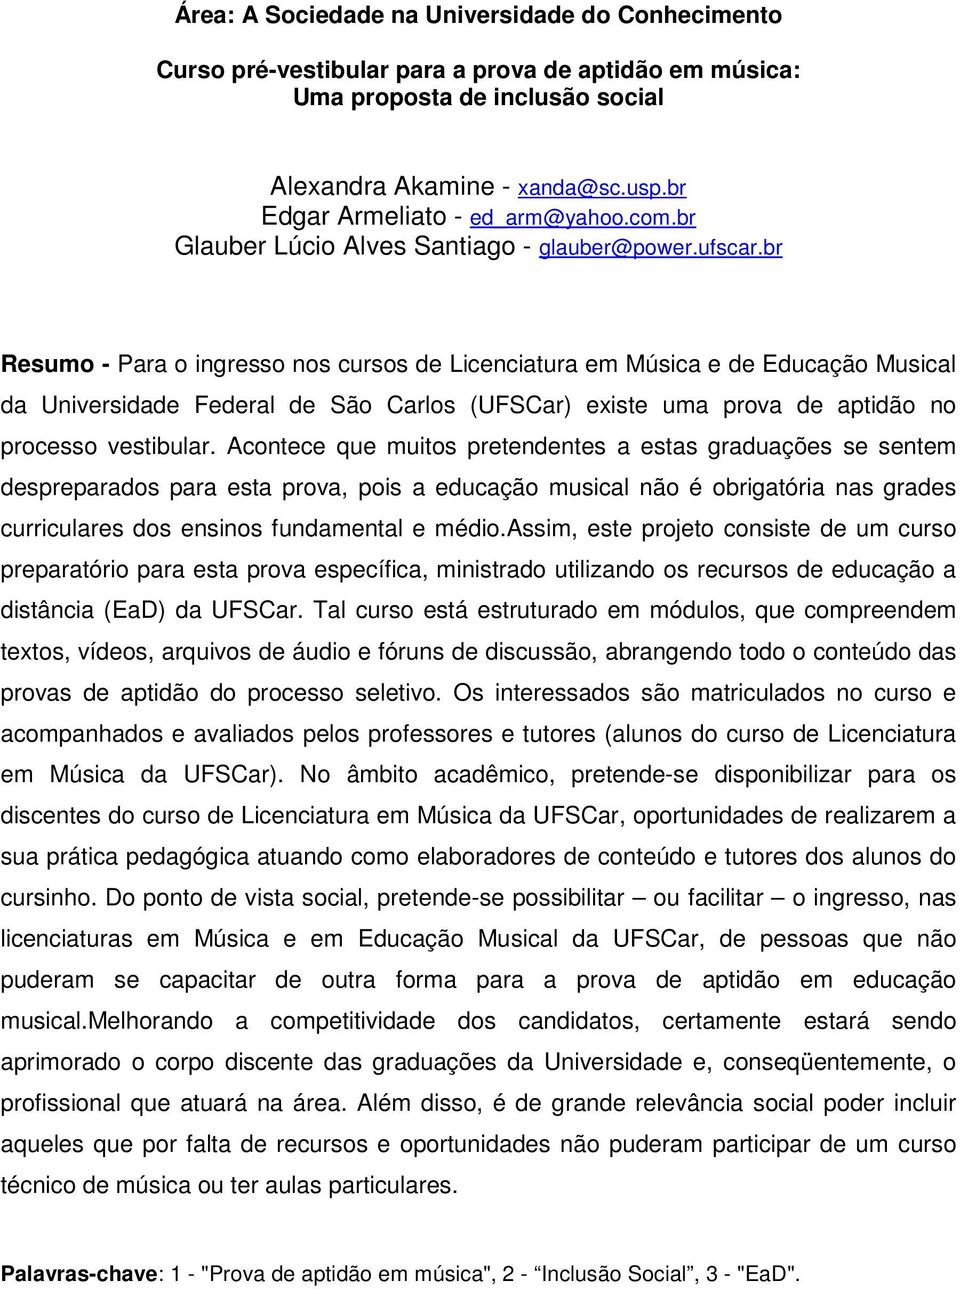 br Resumo - Para o ingresso nos cursos de Licenciatura em Música e de Educação Musical da Universidade Federal de São Carlos (UFSCar) existe uma prova de aptidão no processo vestibular.